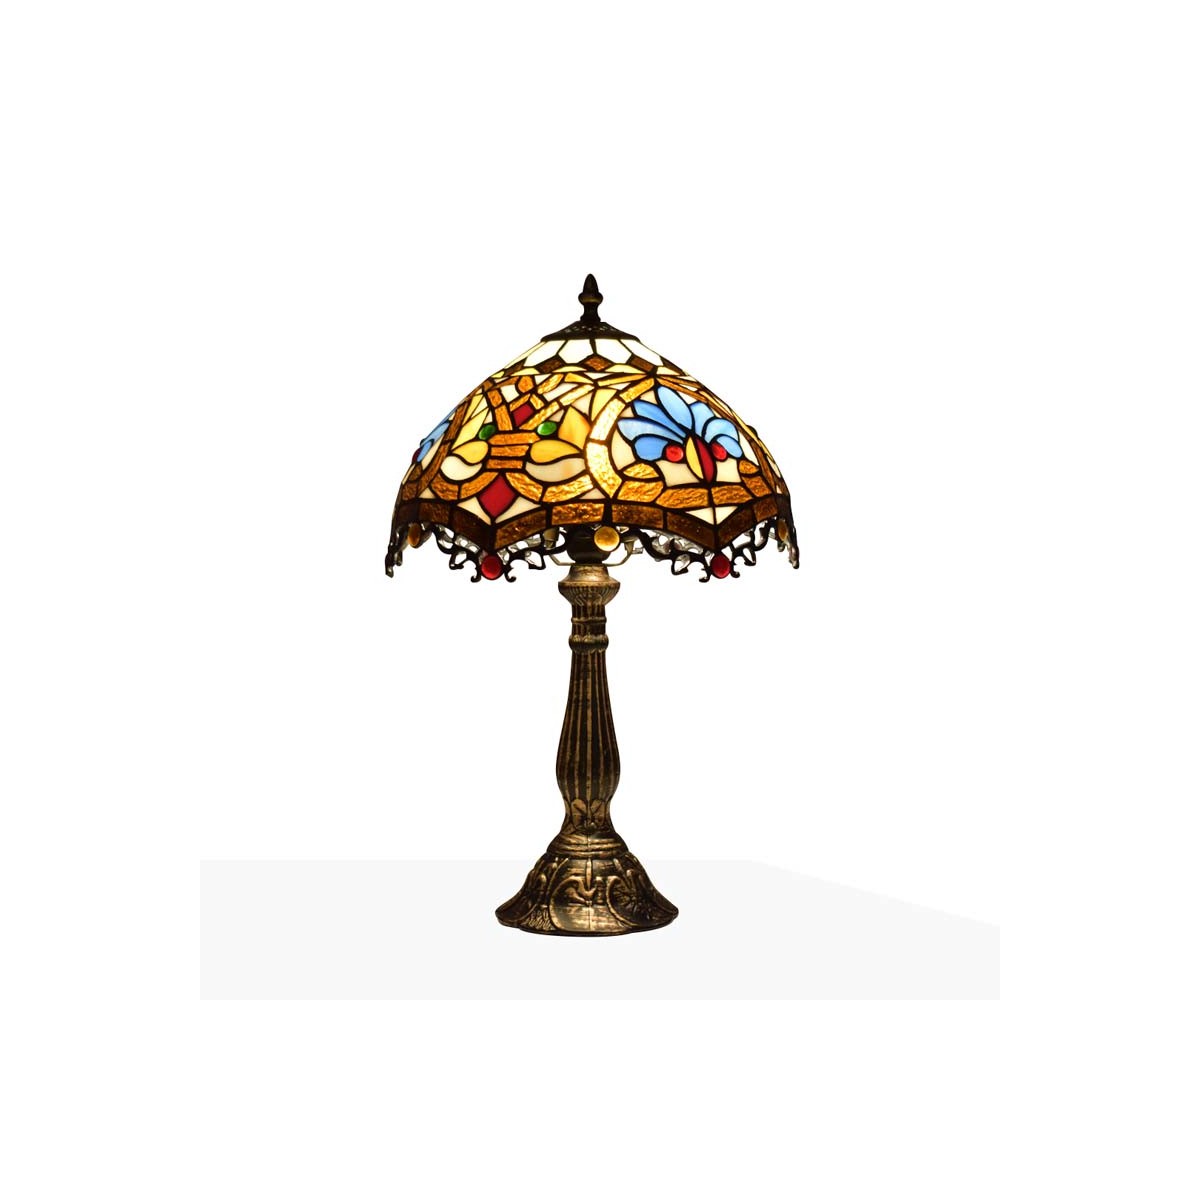 Lámpara inspiración Tiffany con mosaico de floral en cristal